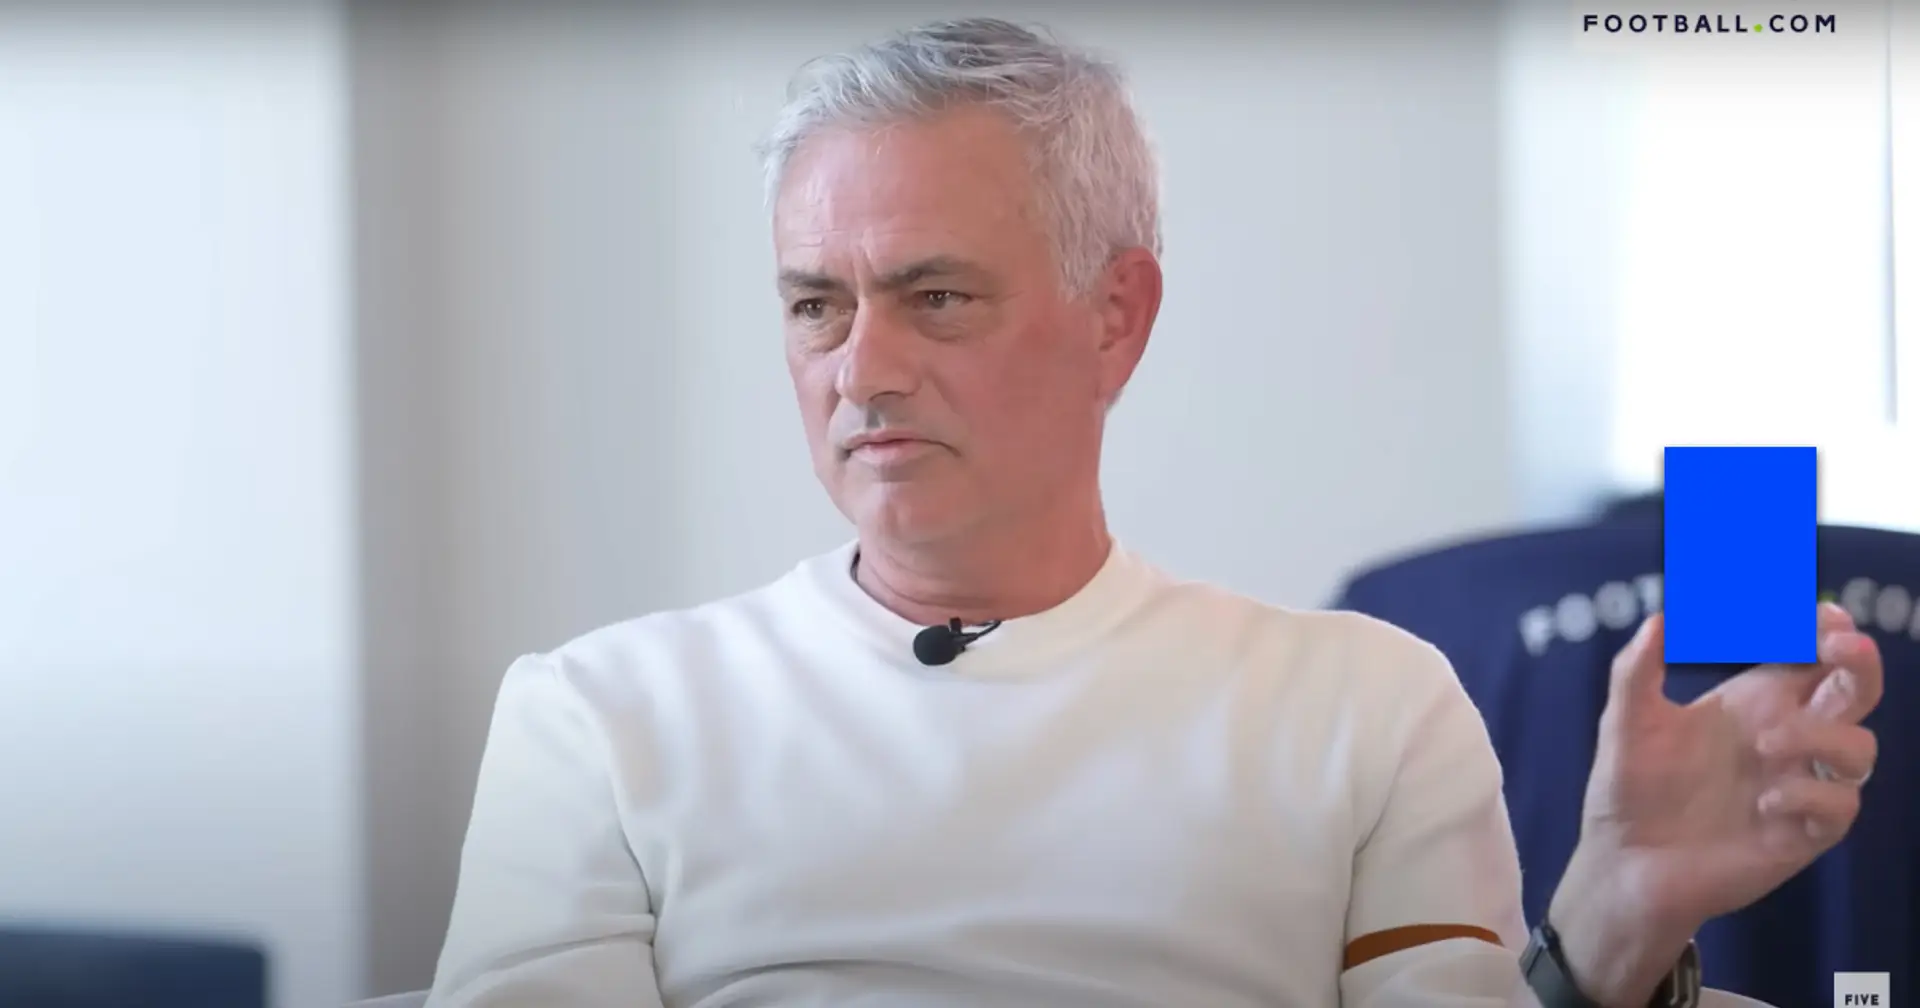 "Wahrscheinlich gerechter": Jose Mourinho plädiert für Blaue Karten